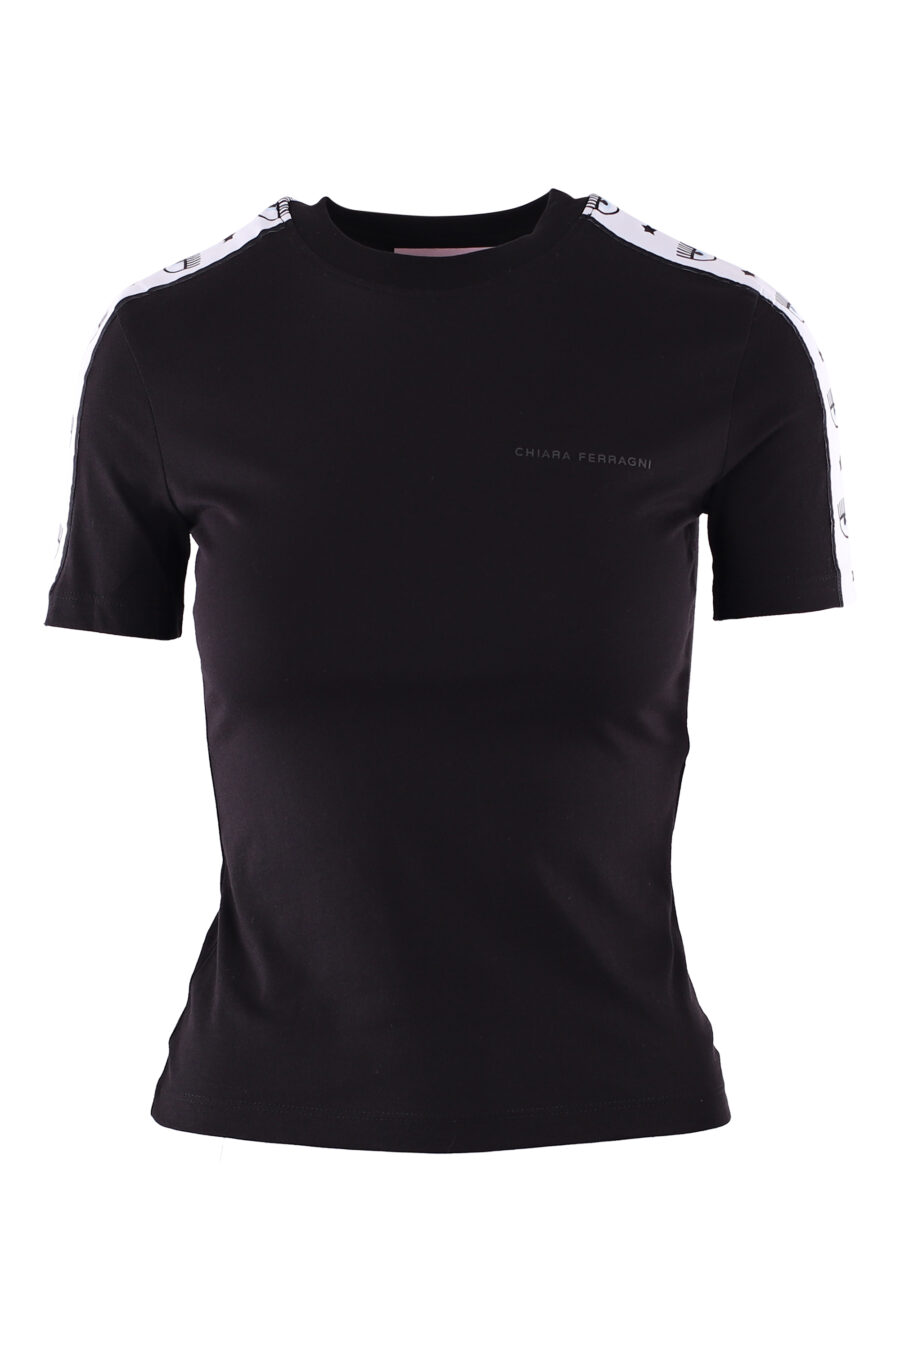 Black T-shirt with eye logo on sleeve band - IMG 6104